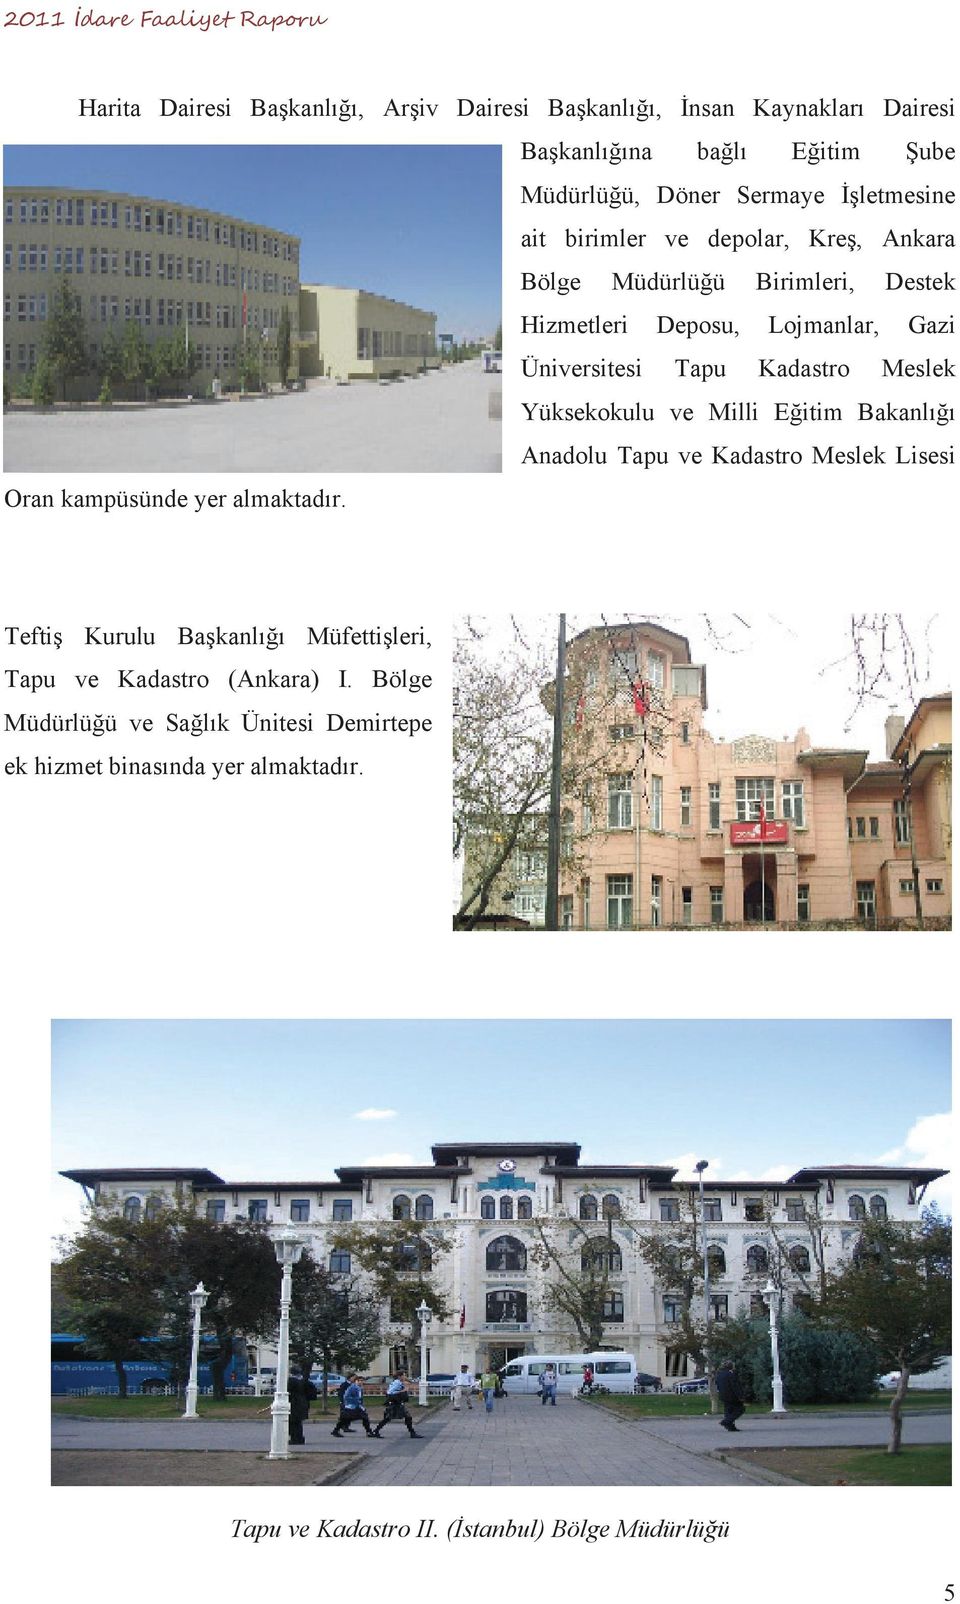 Yüksekokulu ve Milli E itim Bakanl Anadolu Tapu ve Kadastro Meslek Lisesi Oran kampüsünde yer almaktad r.